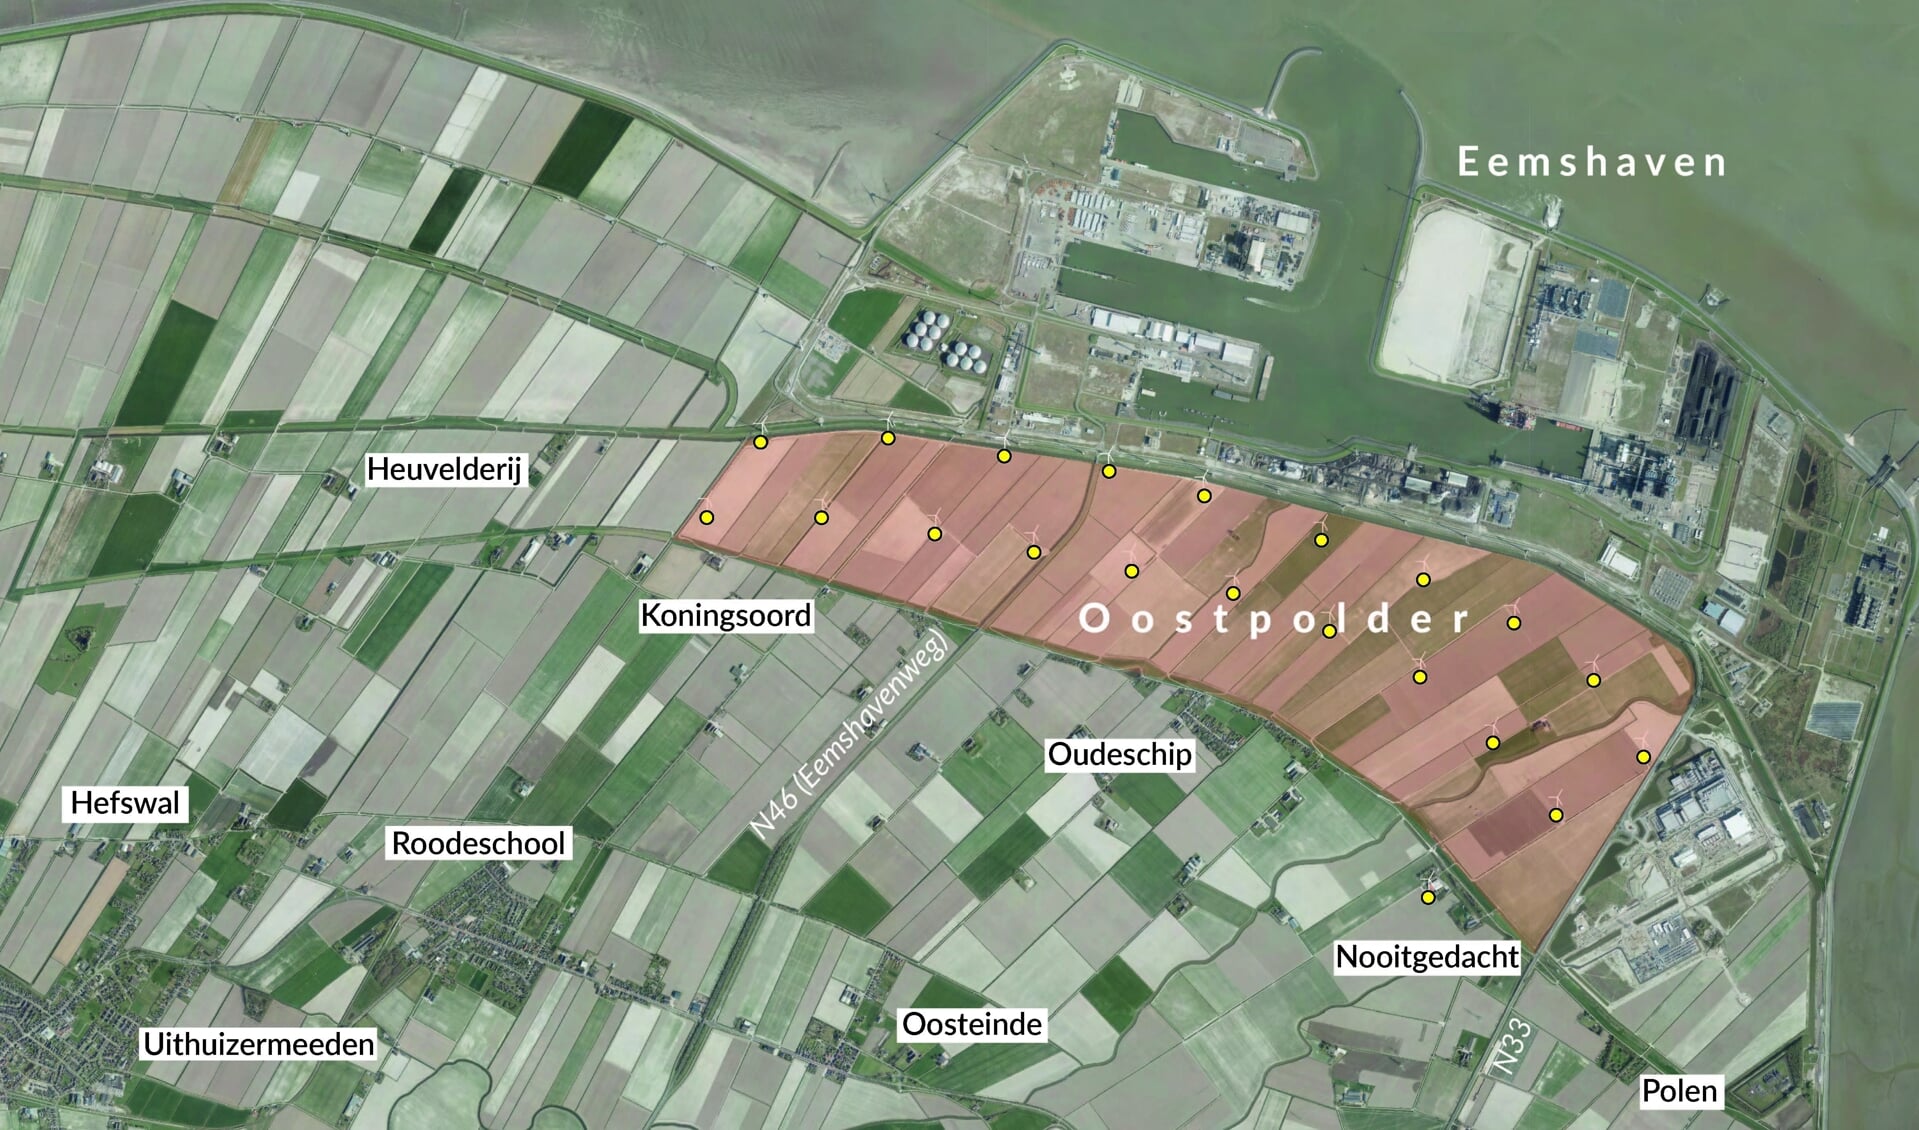 Door de uitbreiding schuift de Eemshaven op richting onder andere Oudeschip, maar volgens de gemeente en de provincie blijft de woonfunctie van de omliggende dorpen zoveel mogelijk behouden. 